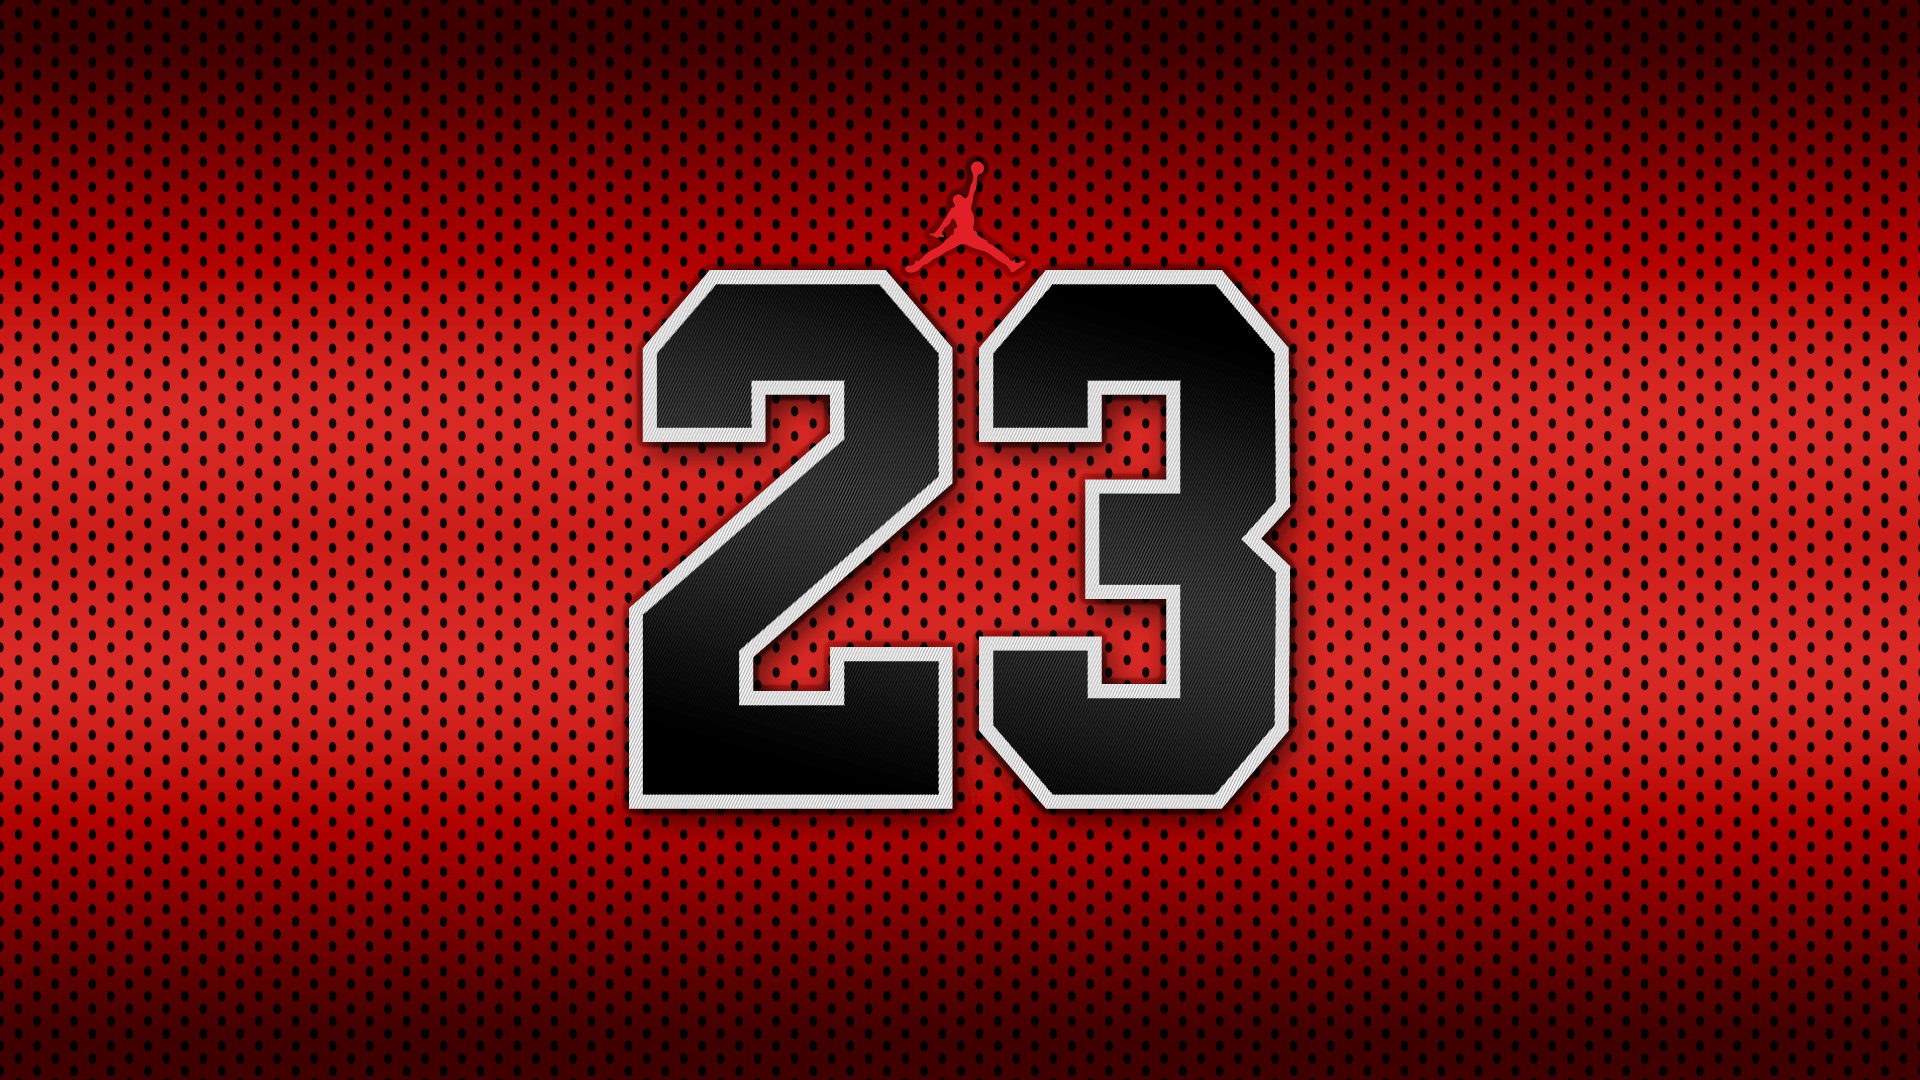 Red Jordan 23 Logo - 23 Jordan Black And Red Wallpapers - Wallpaper Cave